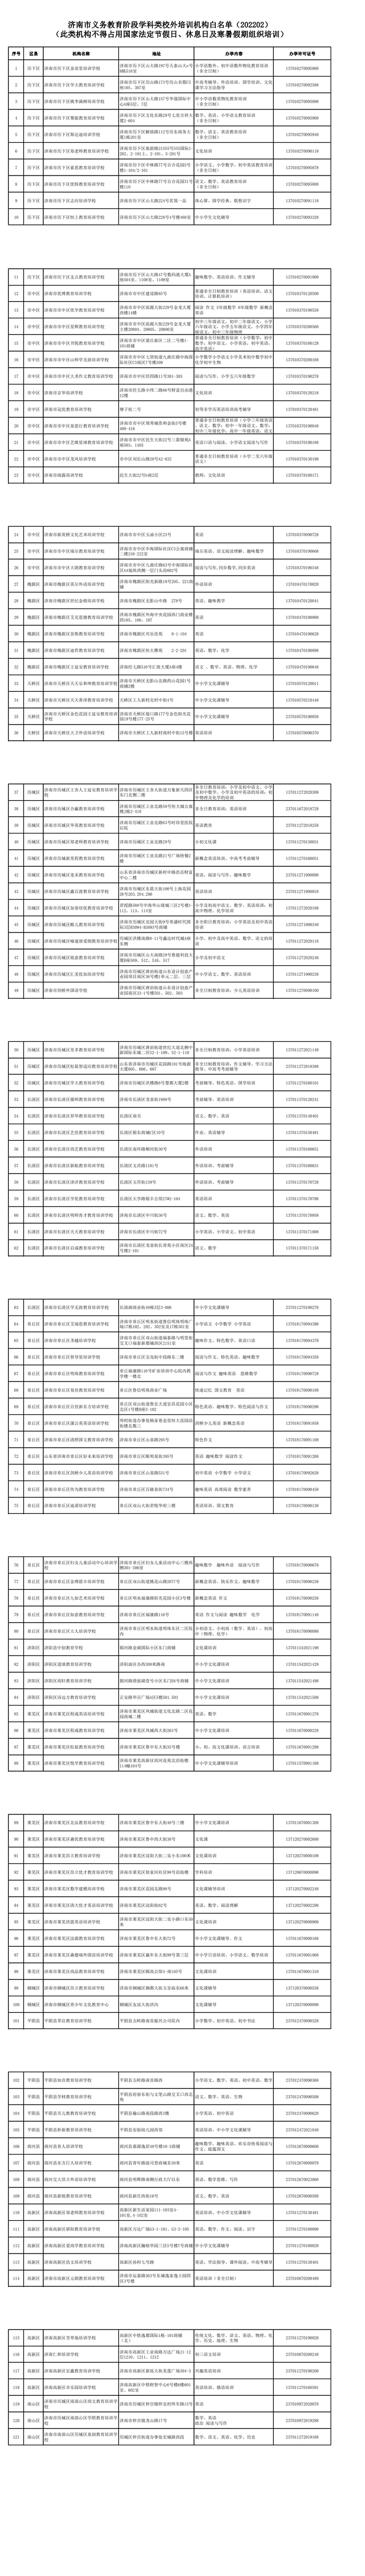 济南市教育局公布义务教育阶段非学科类培训机构“白名单”1663家